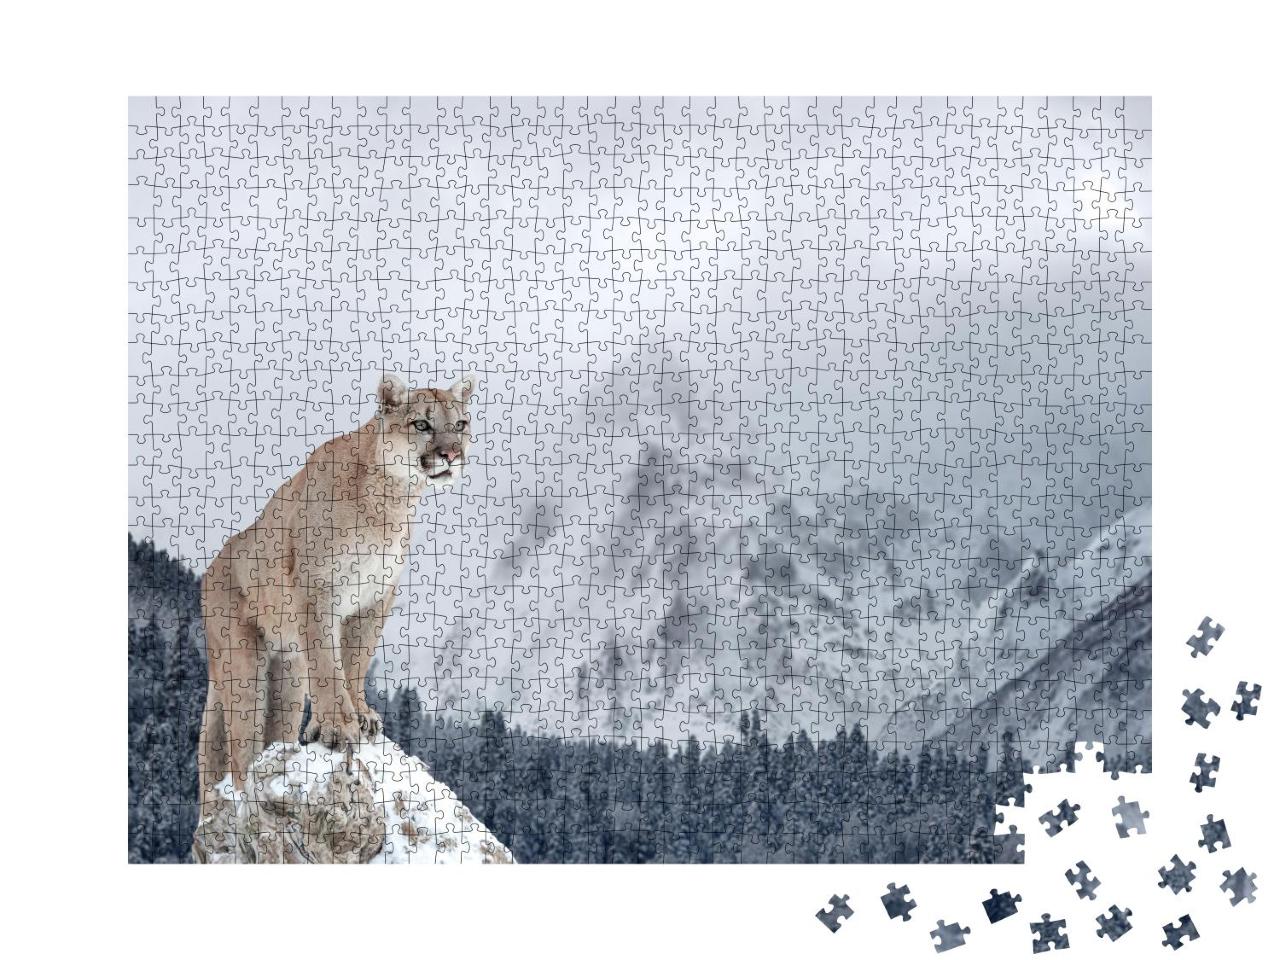 Puzzle 1000 Teile „Porträt eines Pumas in den winterlichen Bergen“